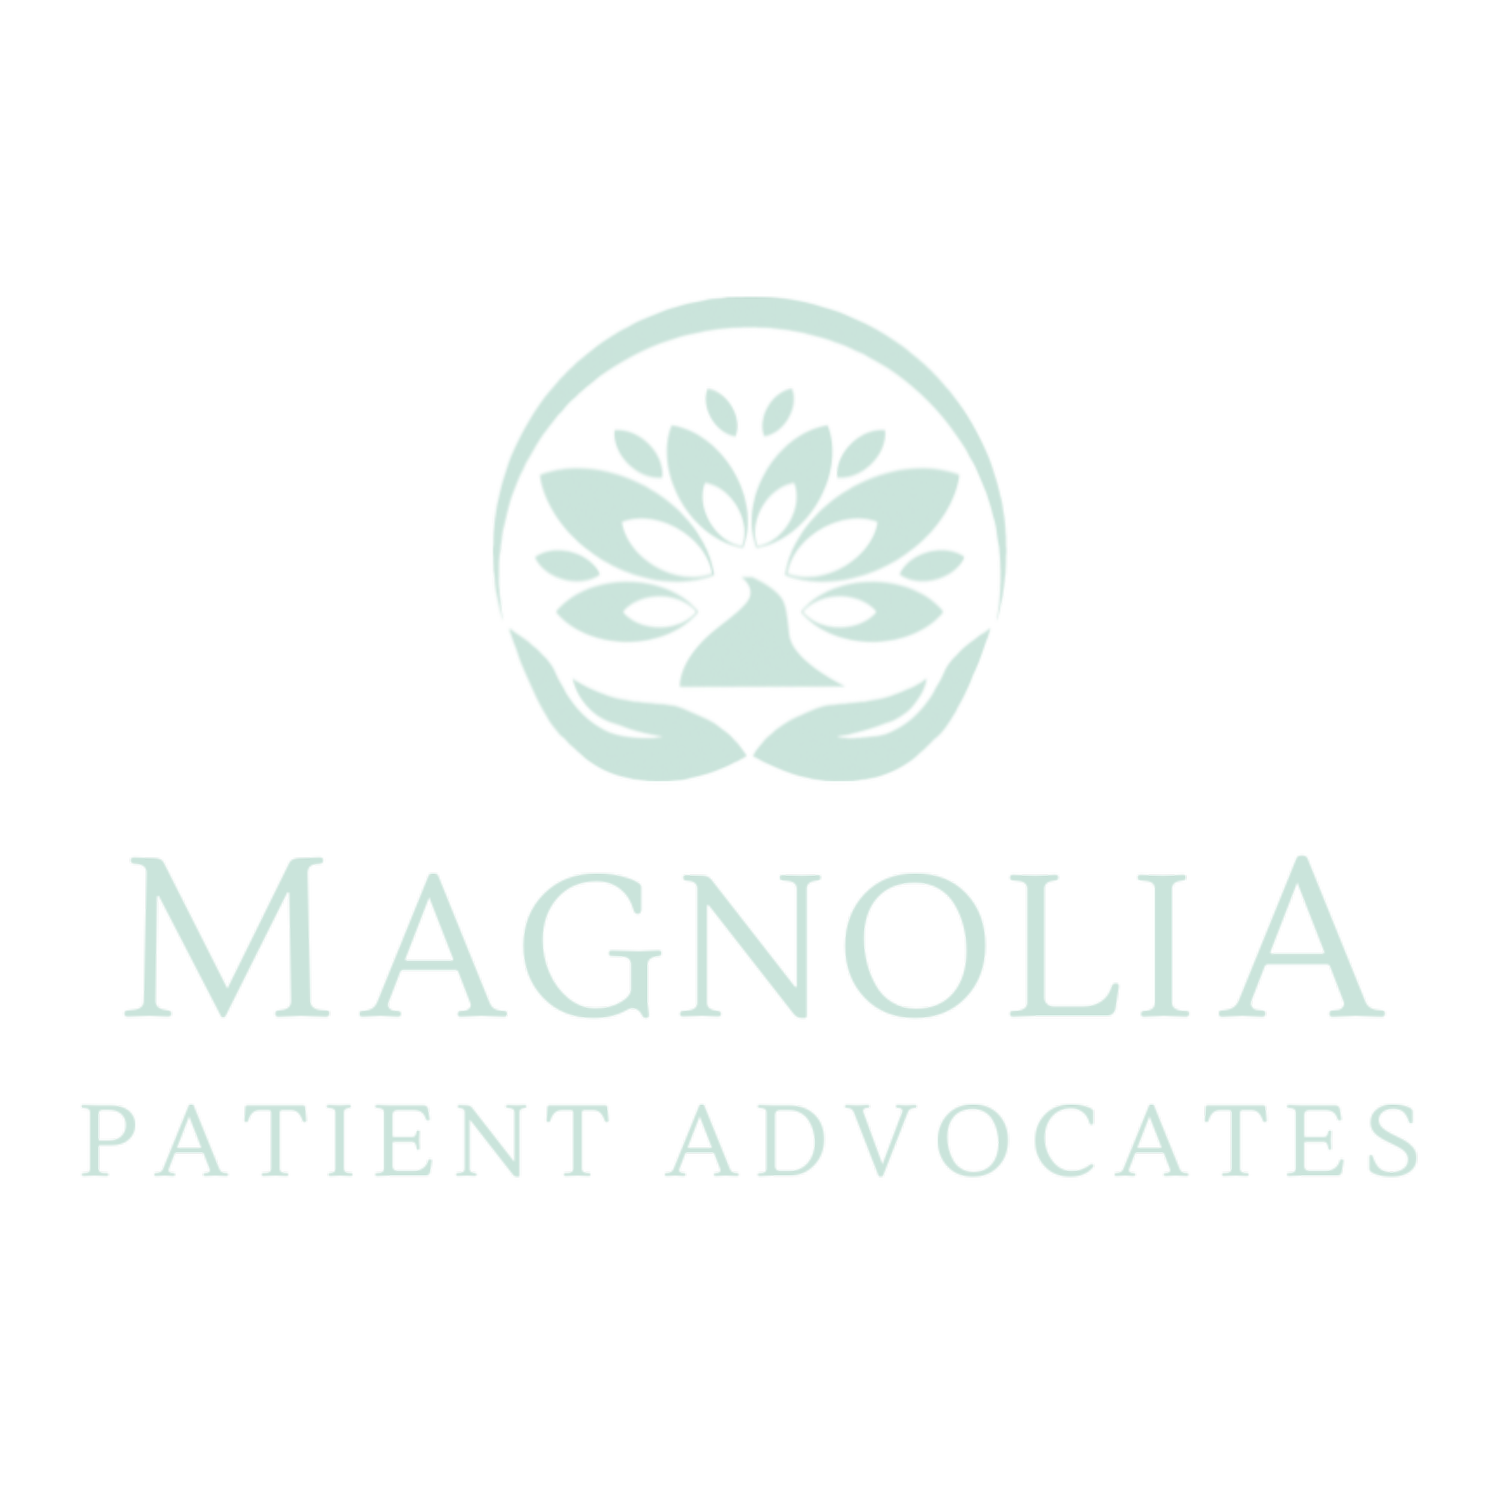 Magnolia Patient Advocates